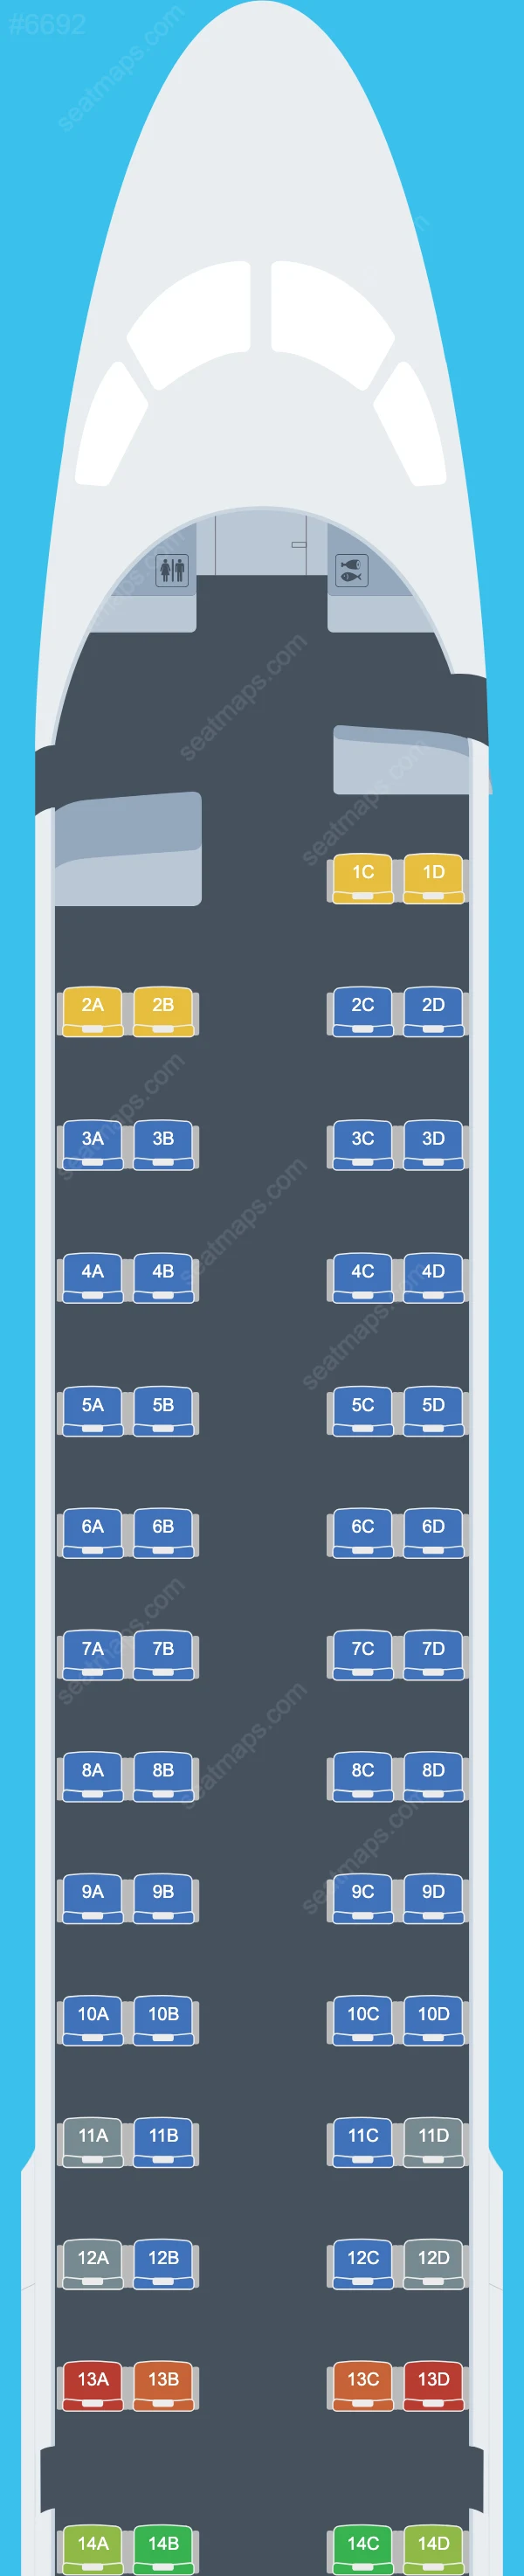 Portugalia Embraer E195 Seat Maps E195